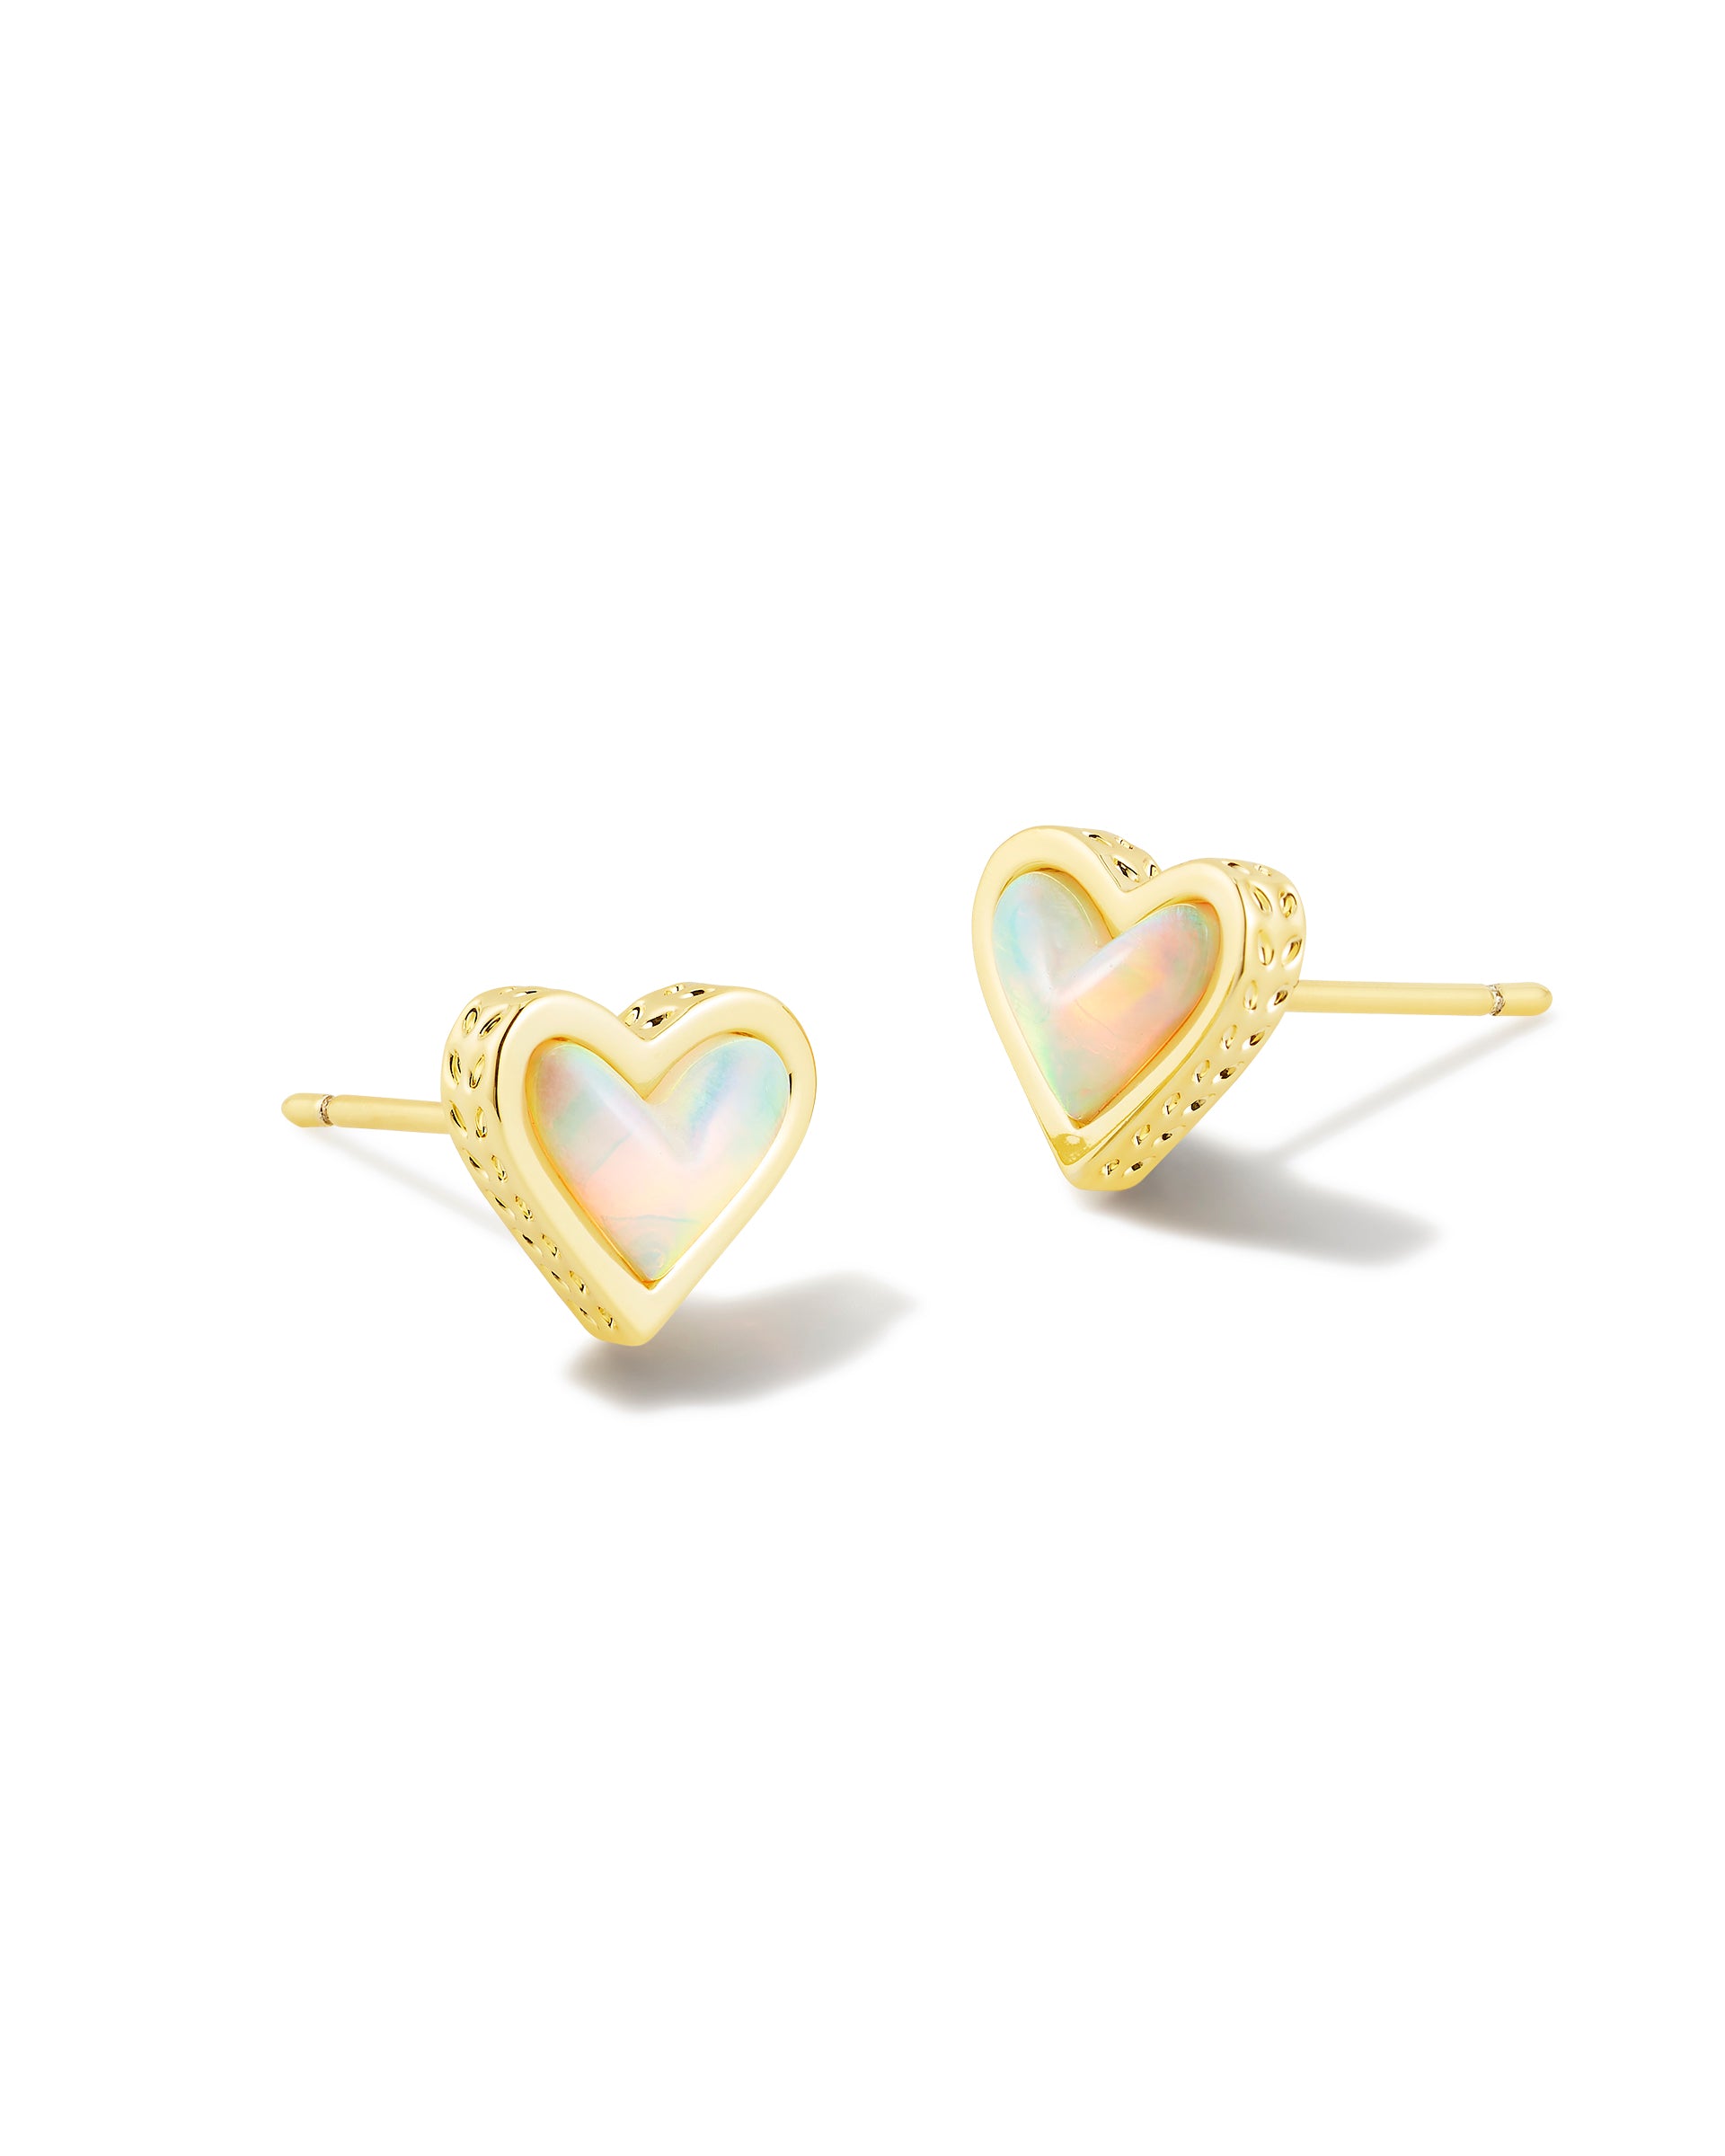 Framed Ari Heart Stud Earrings Gold White Opalescent Resin